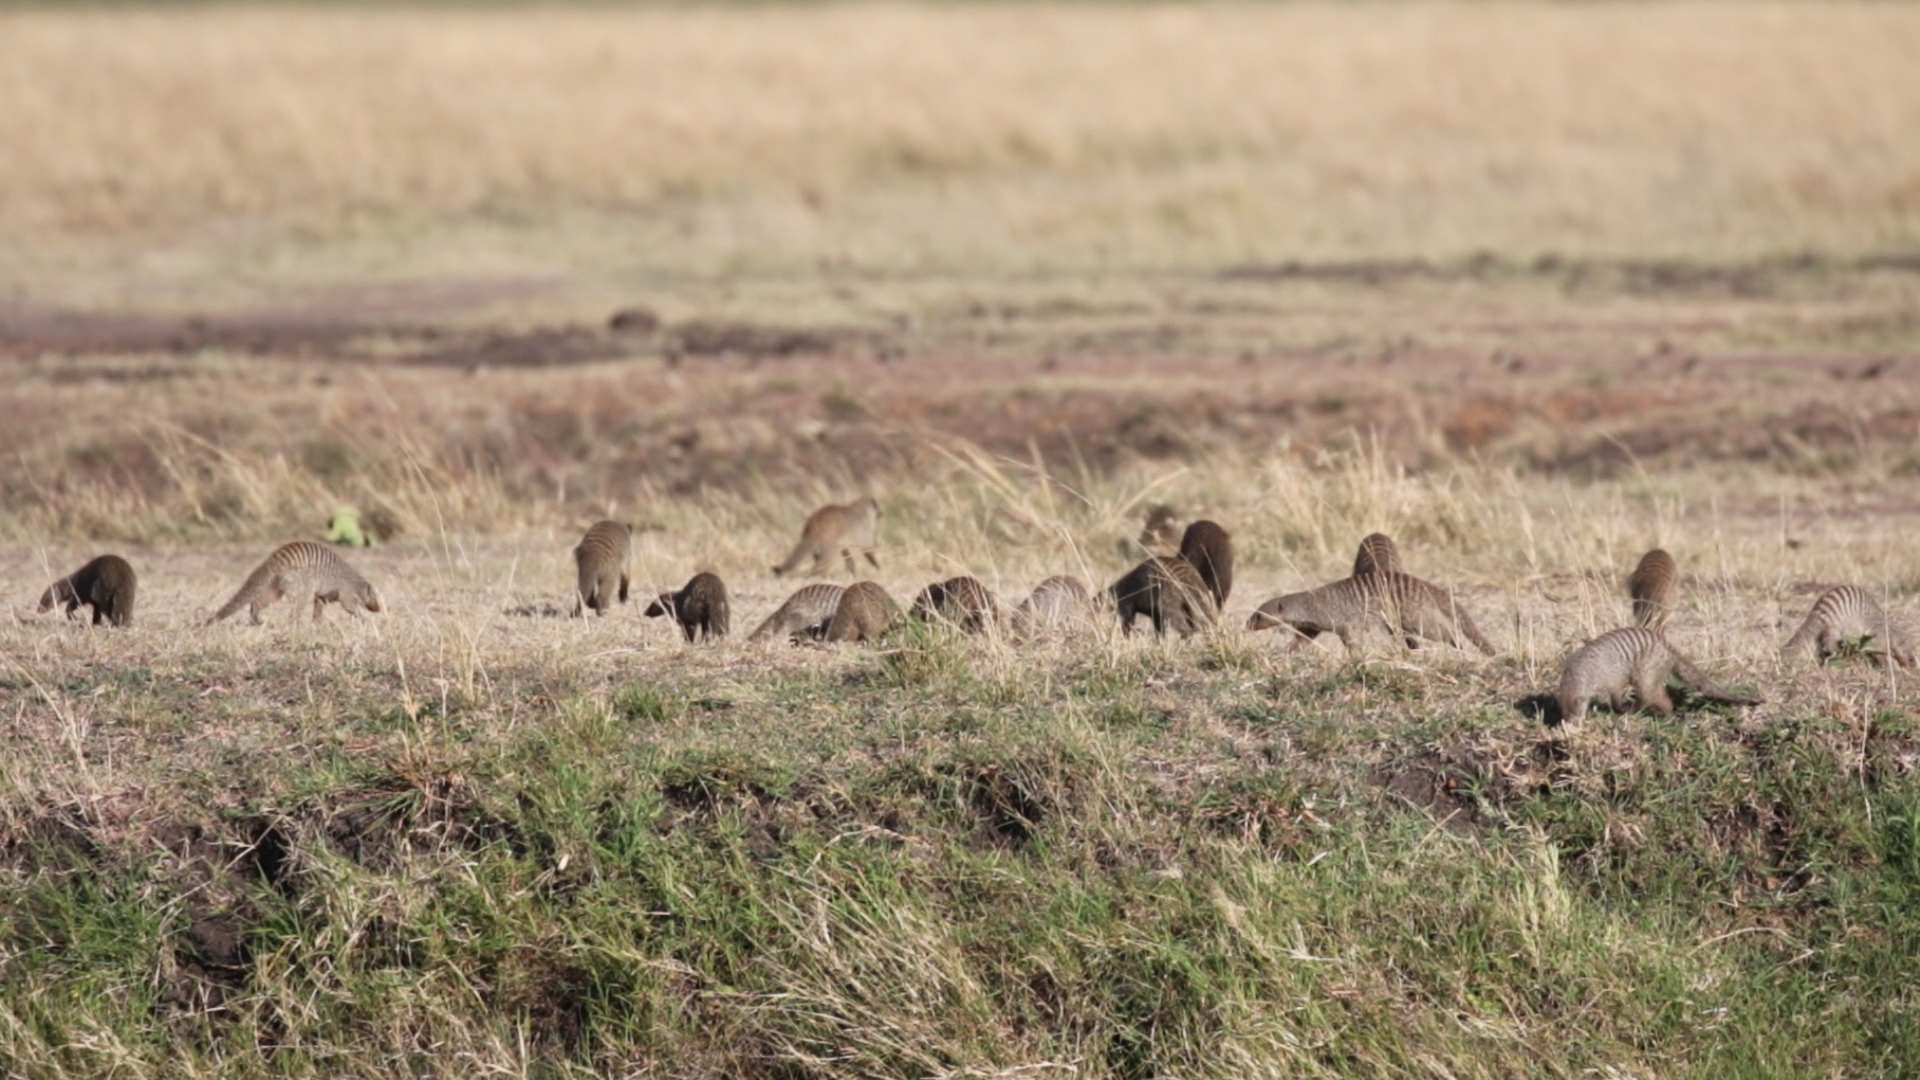 Masai Mara - Mungos